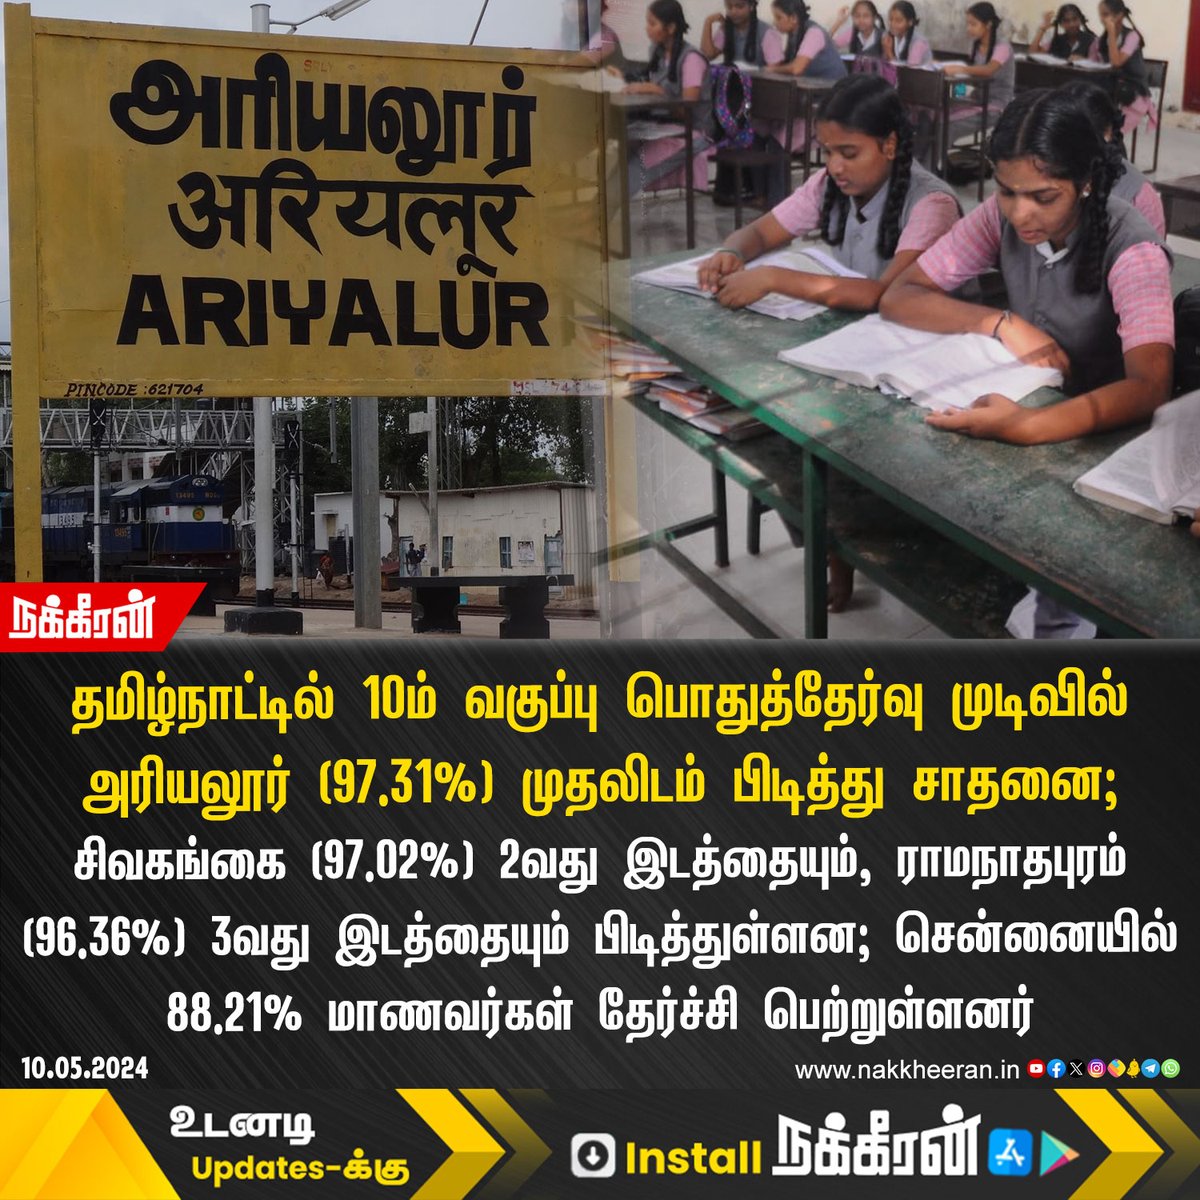 தமிழ்நாட்டில் 10ம் வகுப்பு பொதுத்தேர்வு தேர்ச்சி விகிதத்தில் அரியலூர் (97.31%) முதலிடம் பிடித்து சாதனை! #10thResults #TamilNadu #Ariyalur #Nakkheeran